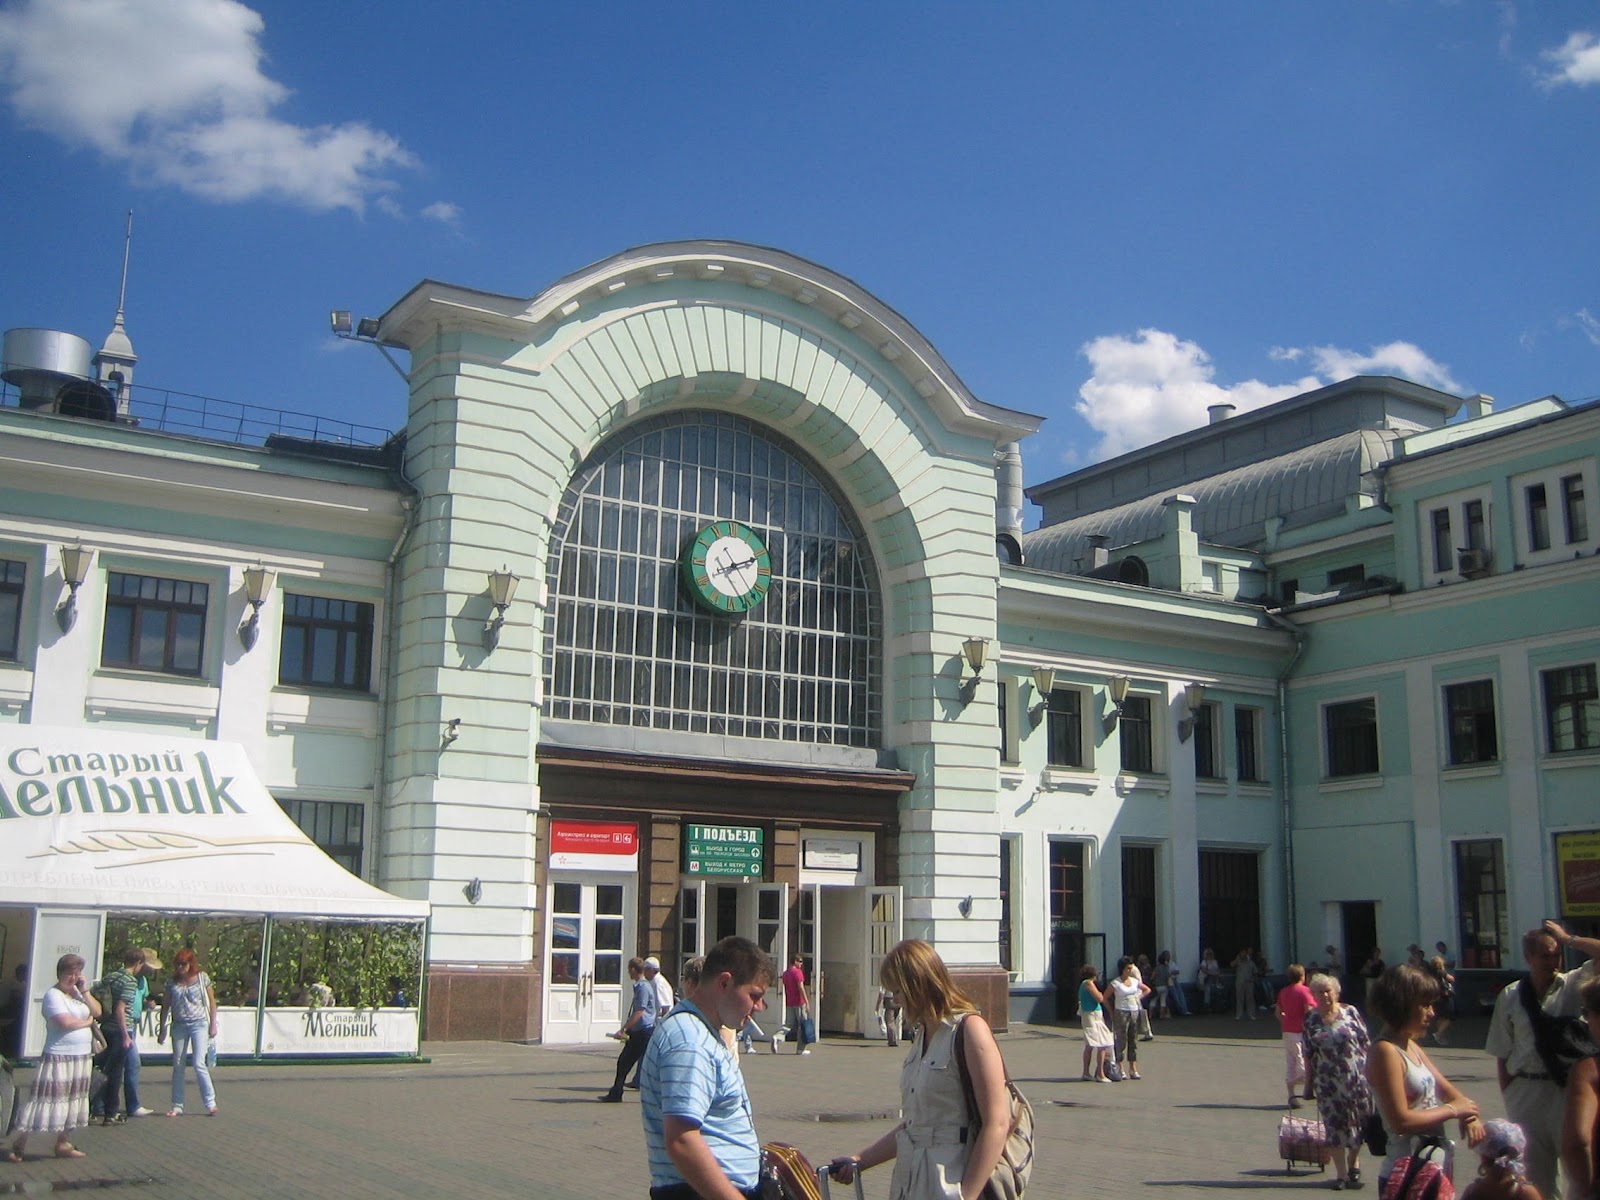 Белорусский вокзал кольцевая